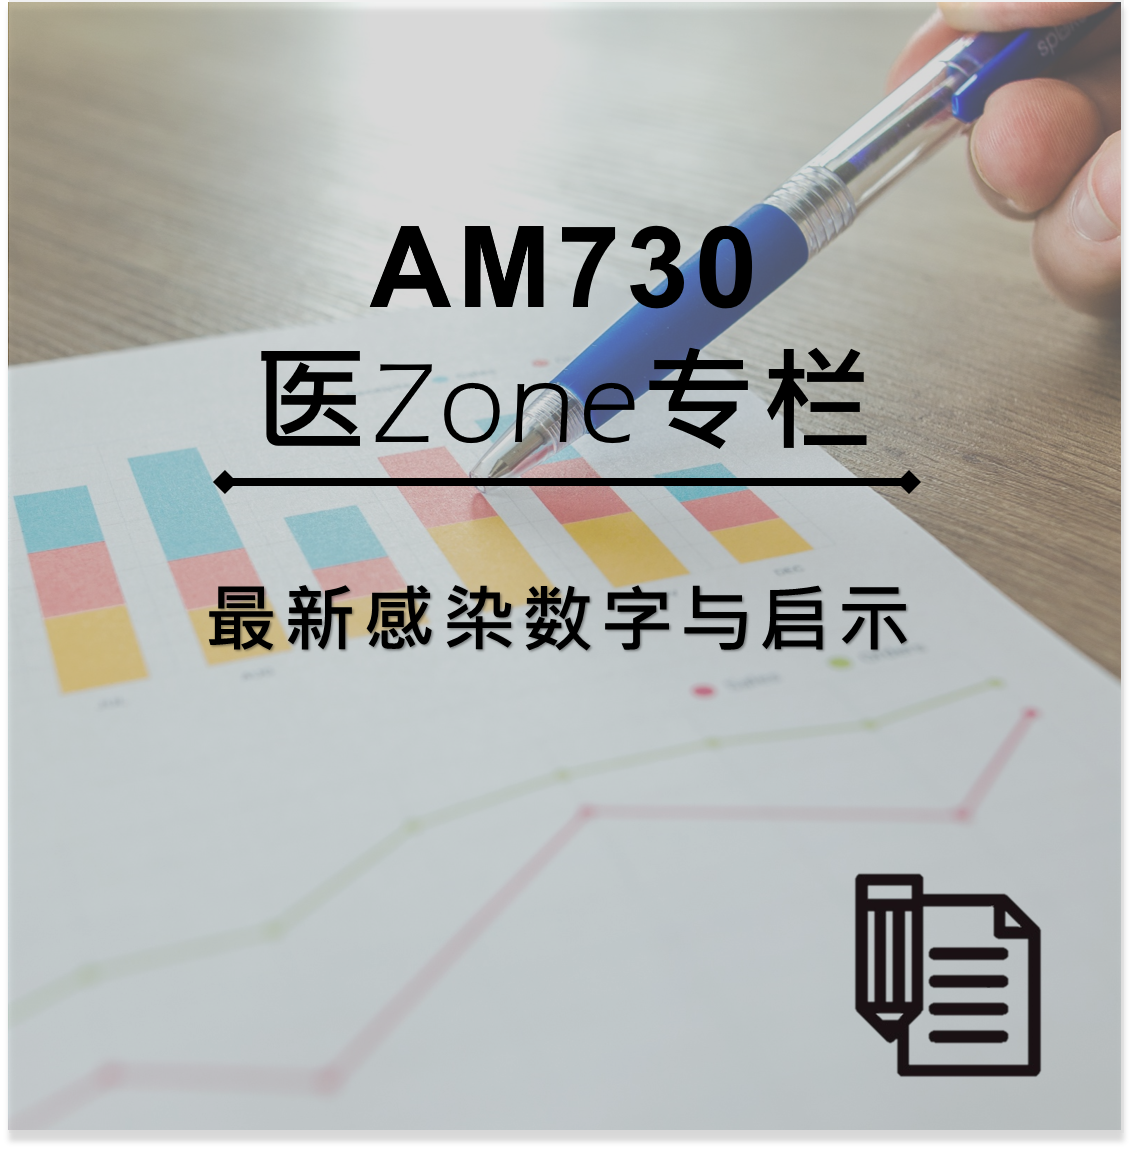 AM730 医Zone 专栏 - 最新感染数字与启示